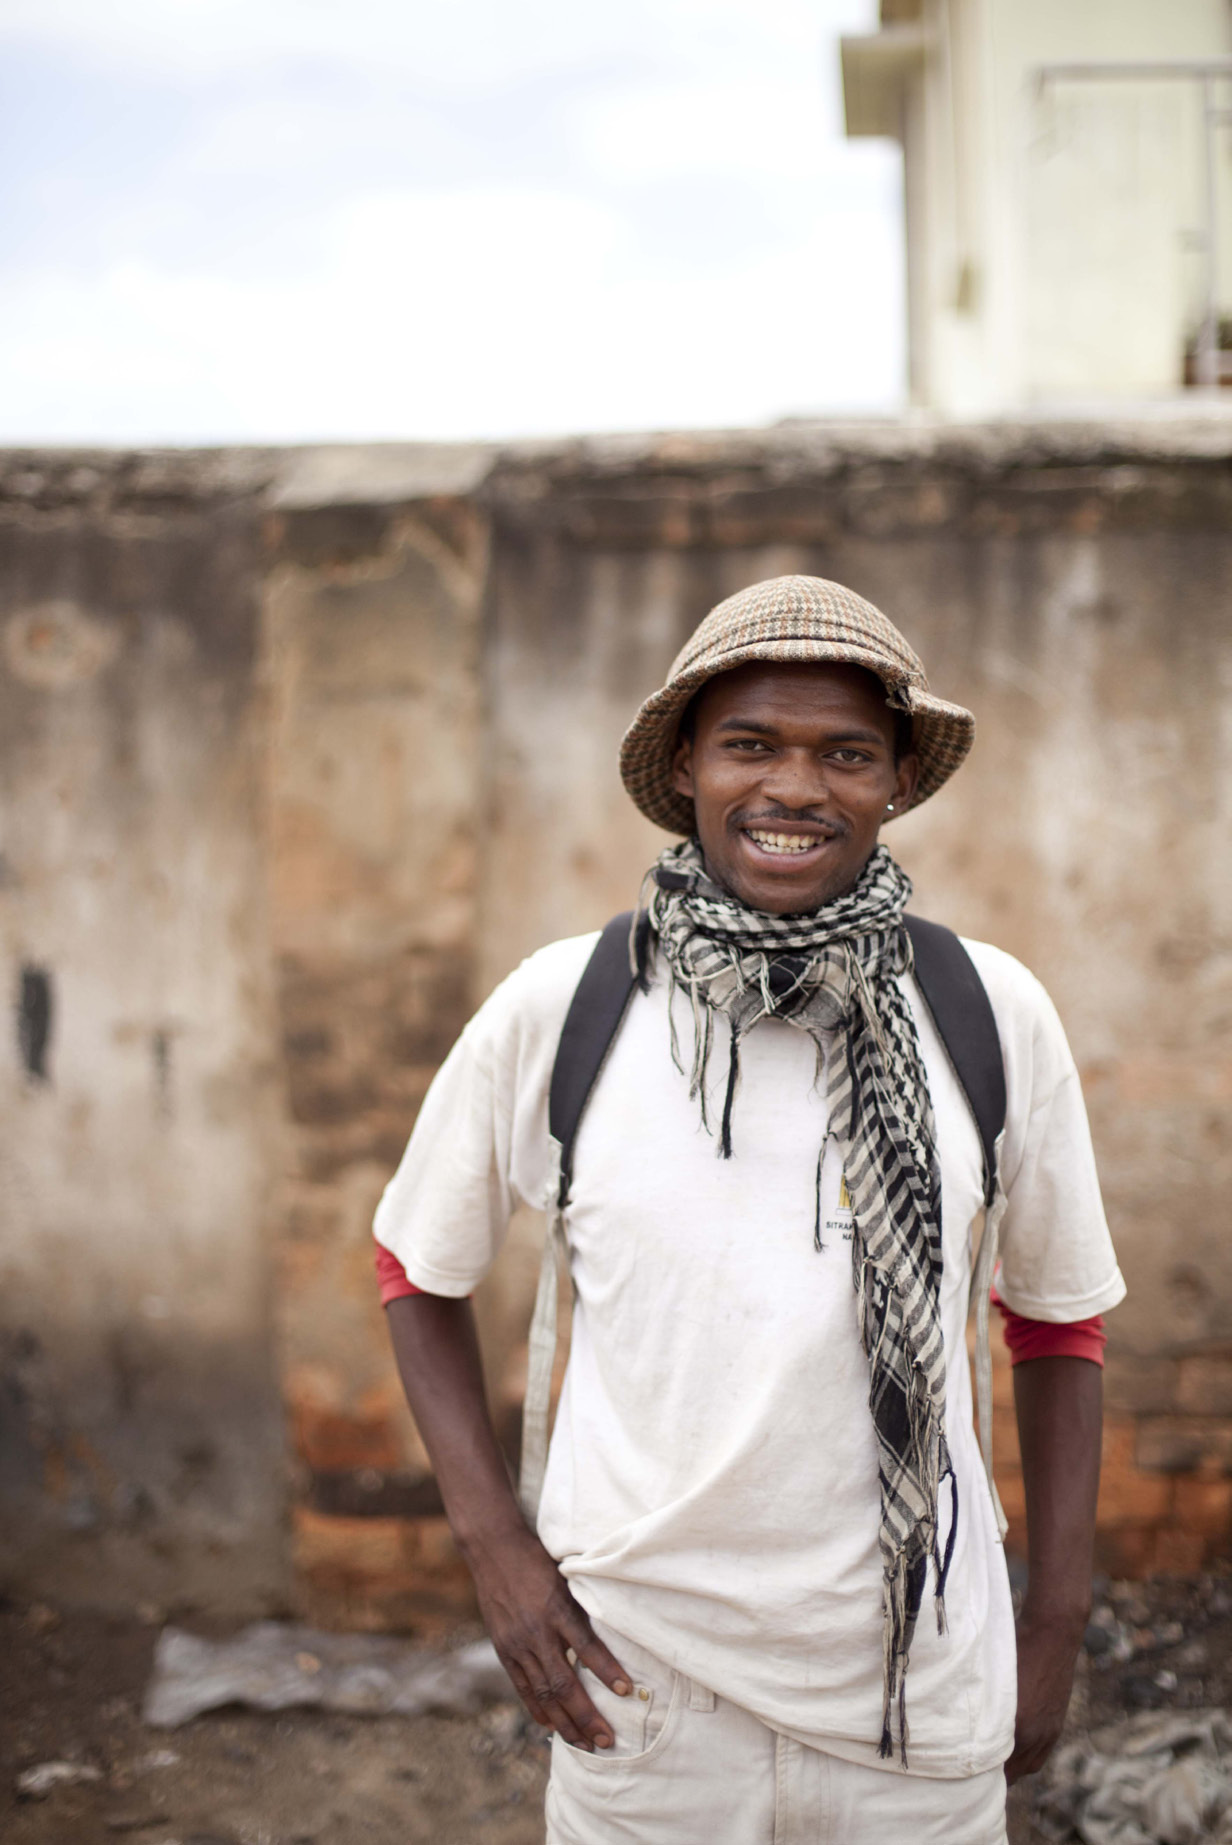 Randrianandrasana Narcisse Jean Ludovic Ludovic kommt aus einer sehr armen Familie aus Antananarivo. Er hat die meiste Zeit seiner Kindheit auf der Strasse in der Umgebung von Anisobe verbracht.